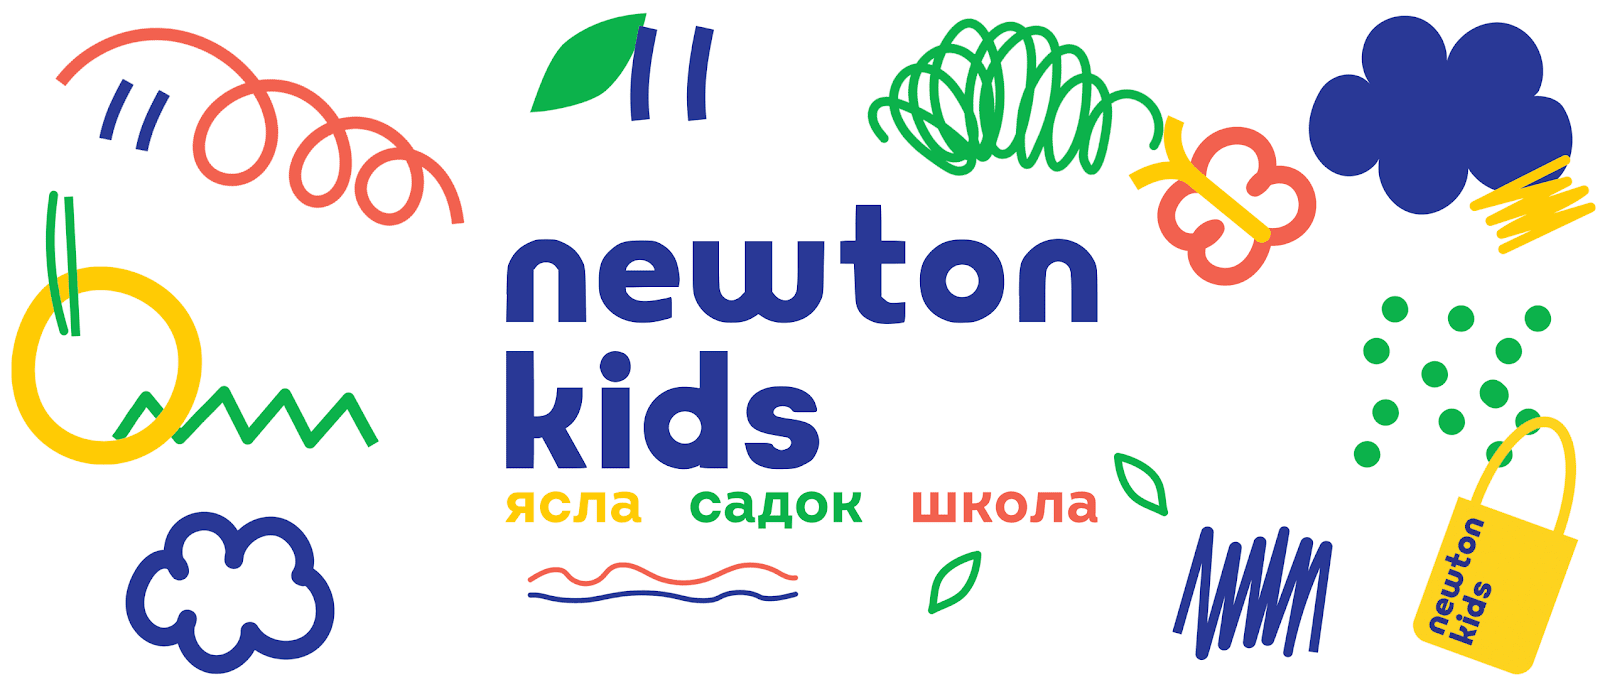 Newton Kids | Лицензированный частный детский центр в Киеве (073) 329 29 29